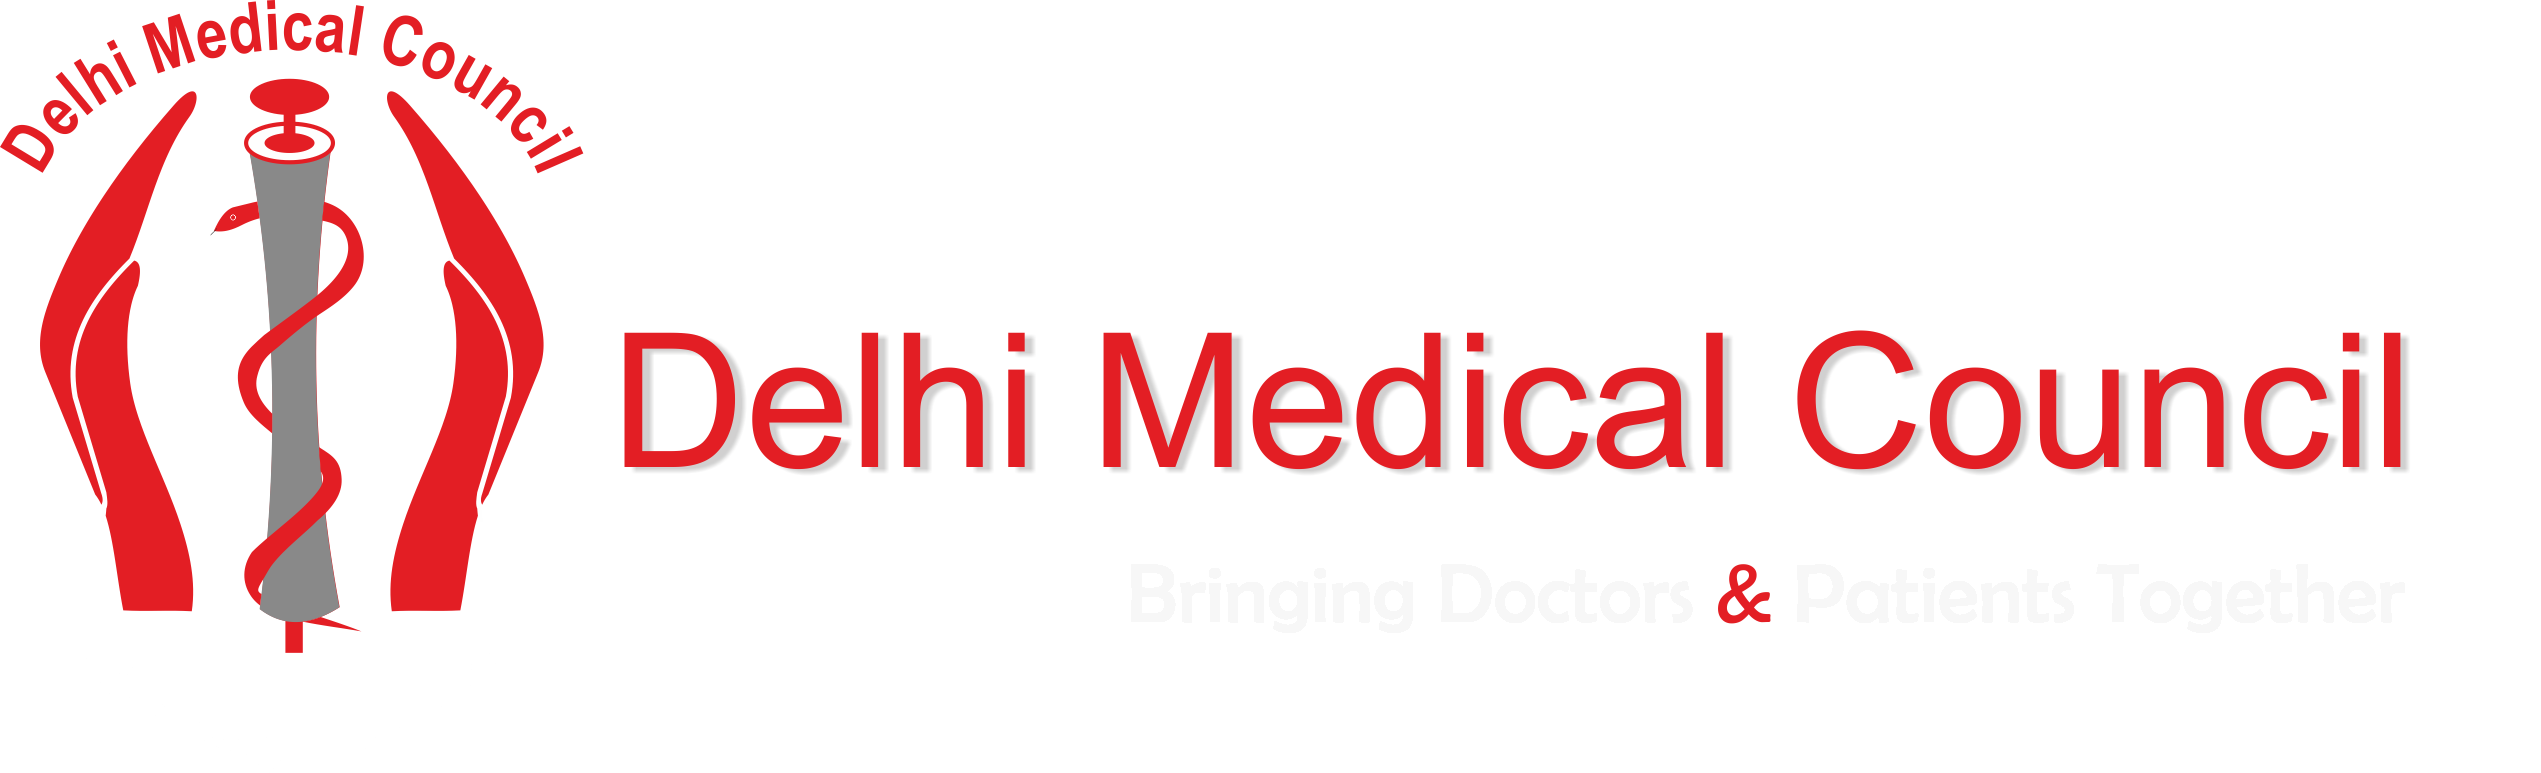 Delhi Medical Council